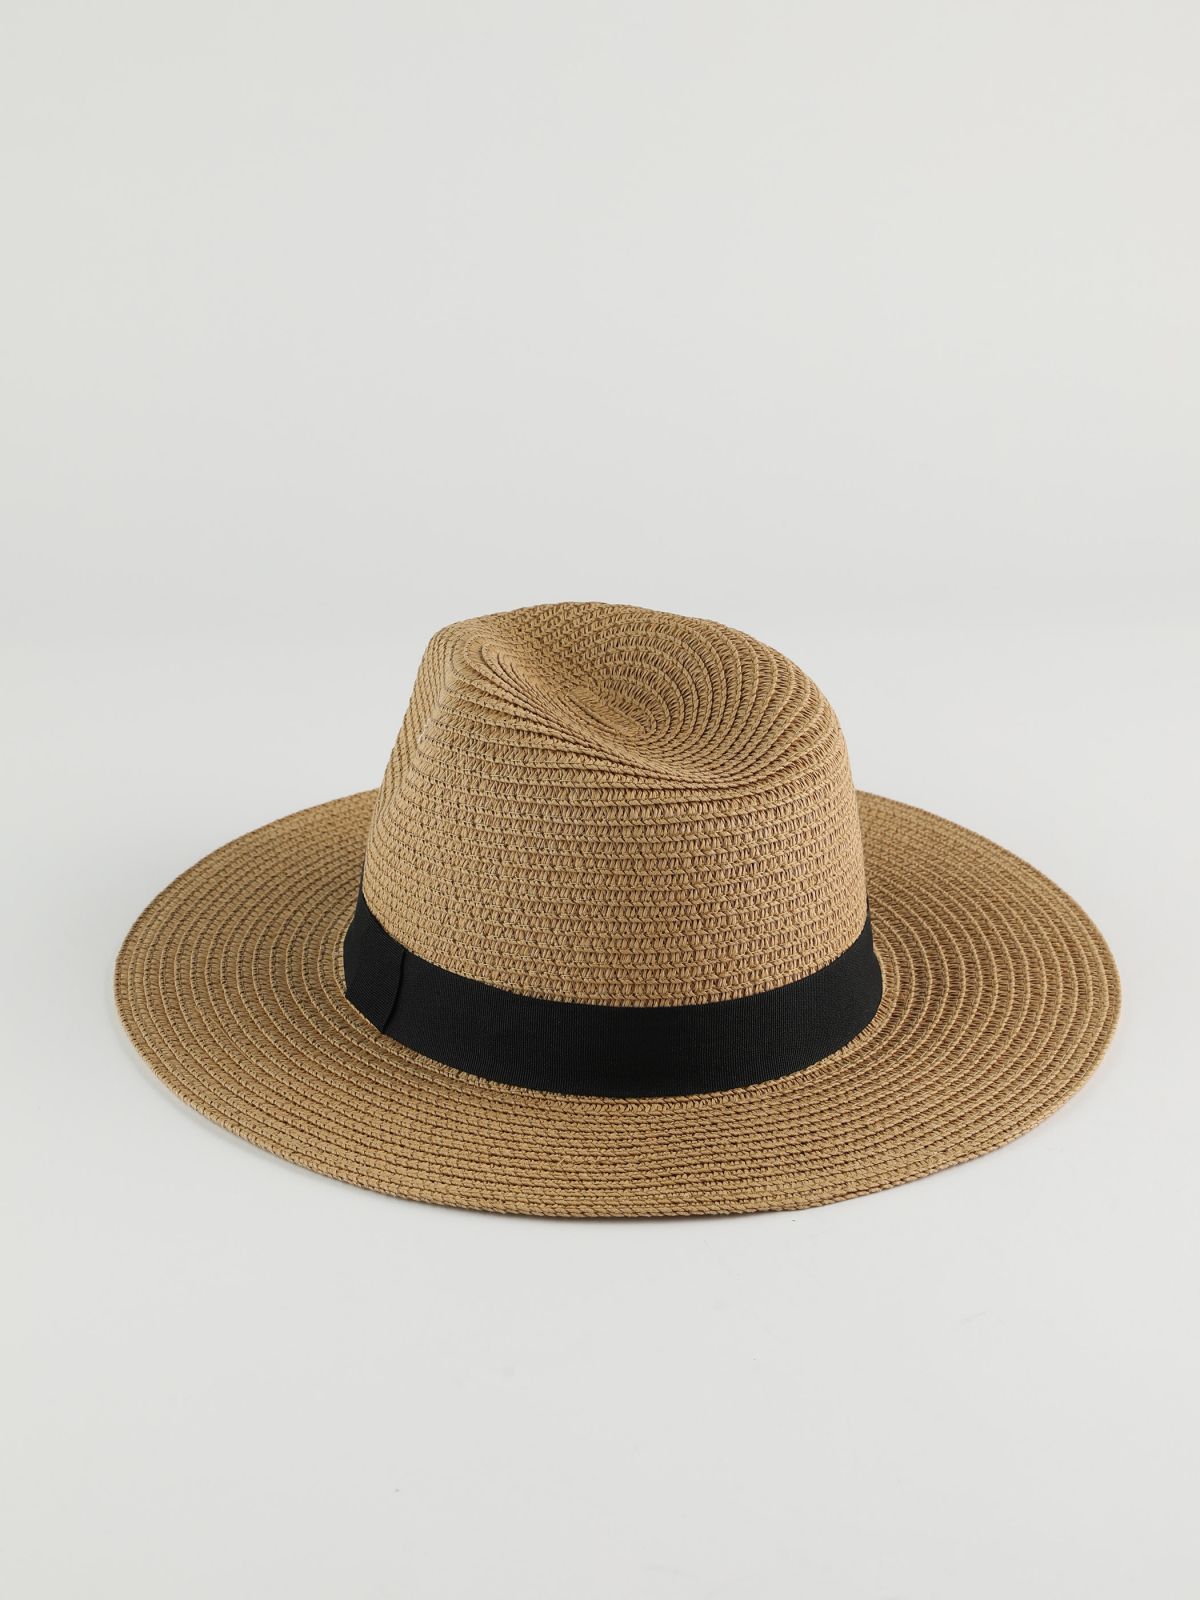  כובע אלמה רחב שוליים / נשים של YANGA